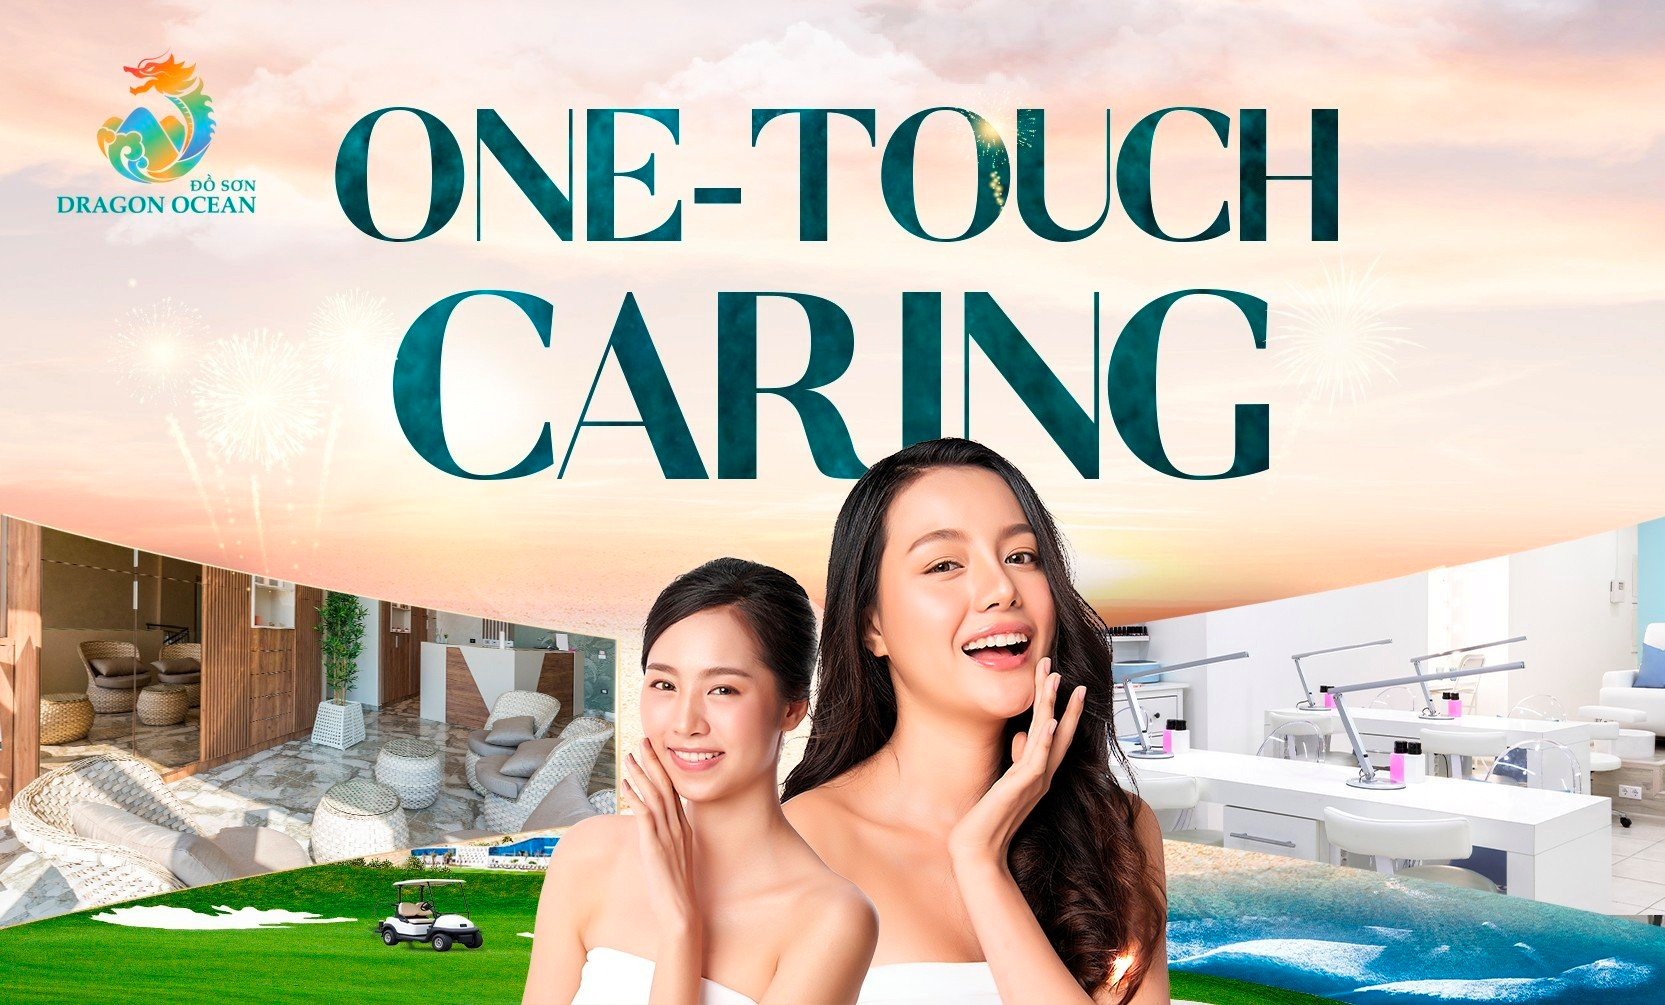 One-Touch Caring - mô hình tích hợp All-In-One trong lĩnh vực làm đẹp, chăm sóc sức khỏe cá nhân với đầy đủ các dịch vụ về chăm sóc tóc, móng, da và cơ thể 